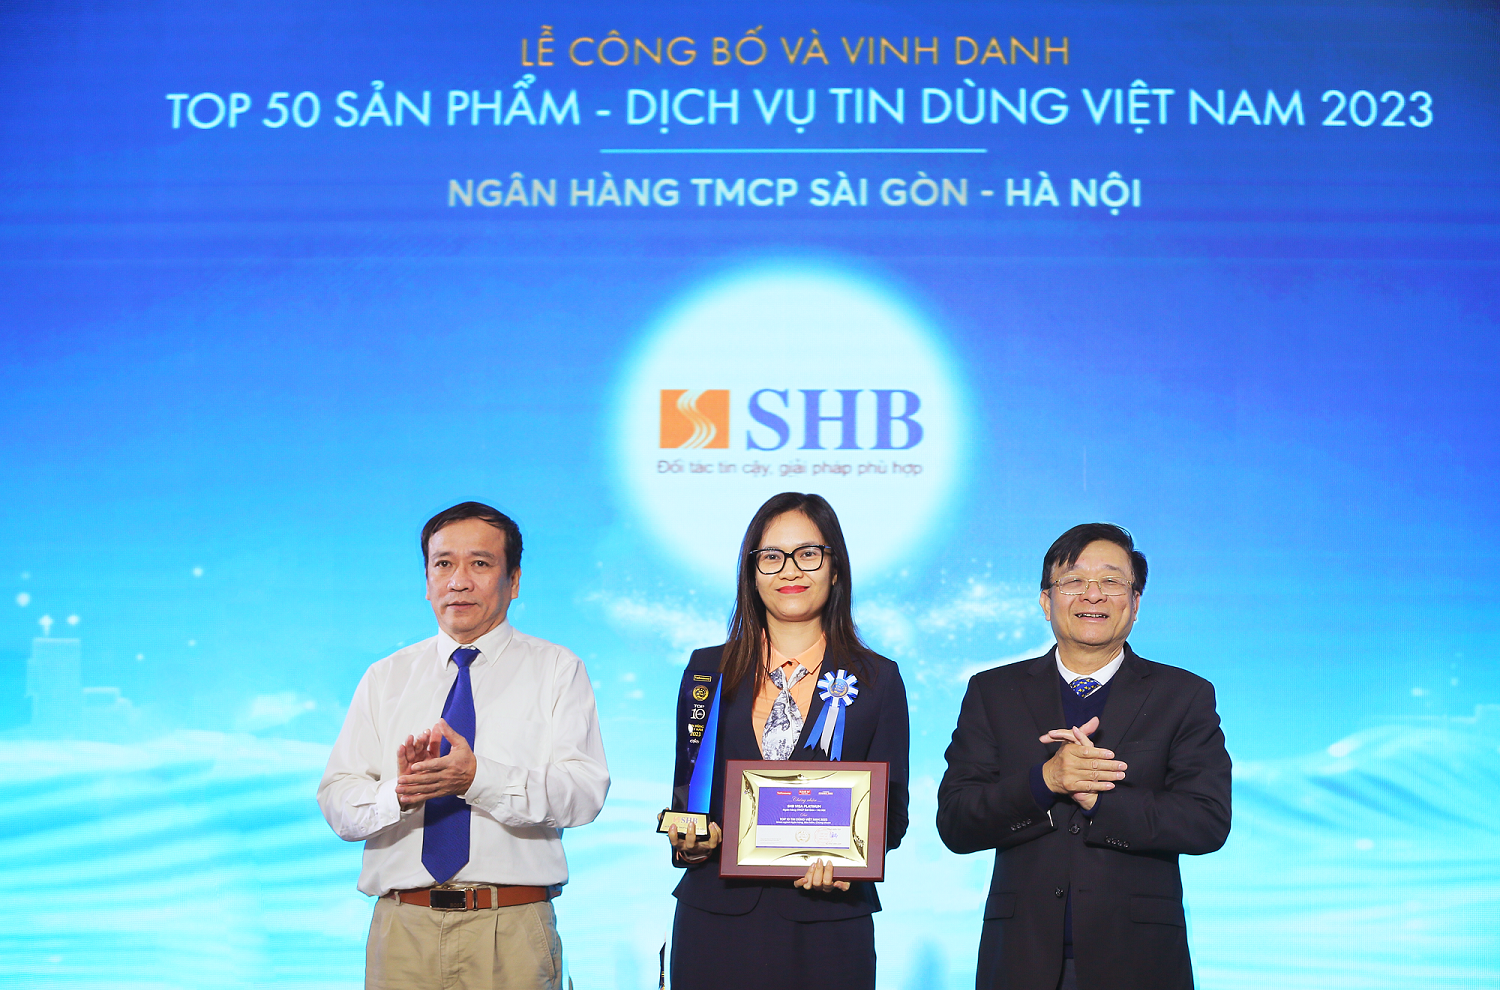 Thẻ tín dụng SHB VISA Platinum được vinh danh Top 50 sản phẩm dịch vụ tin dùng Việt Nam 2023- Ảnh 1.